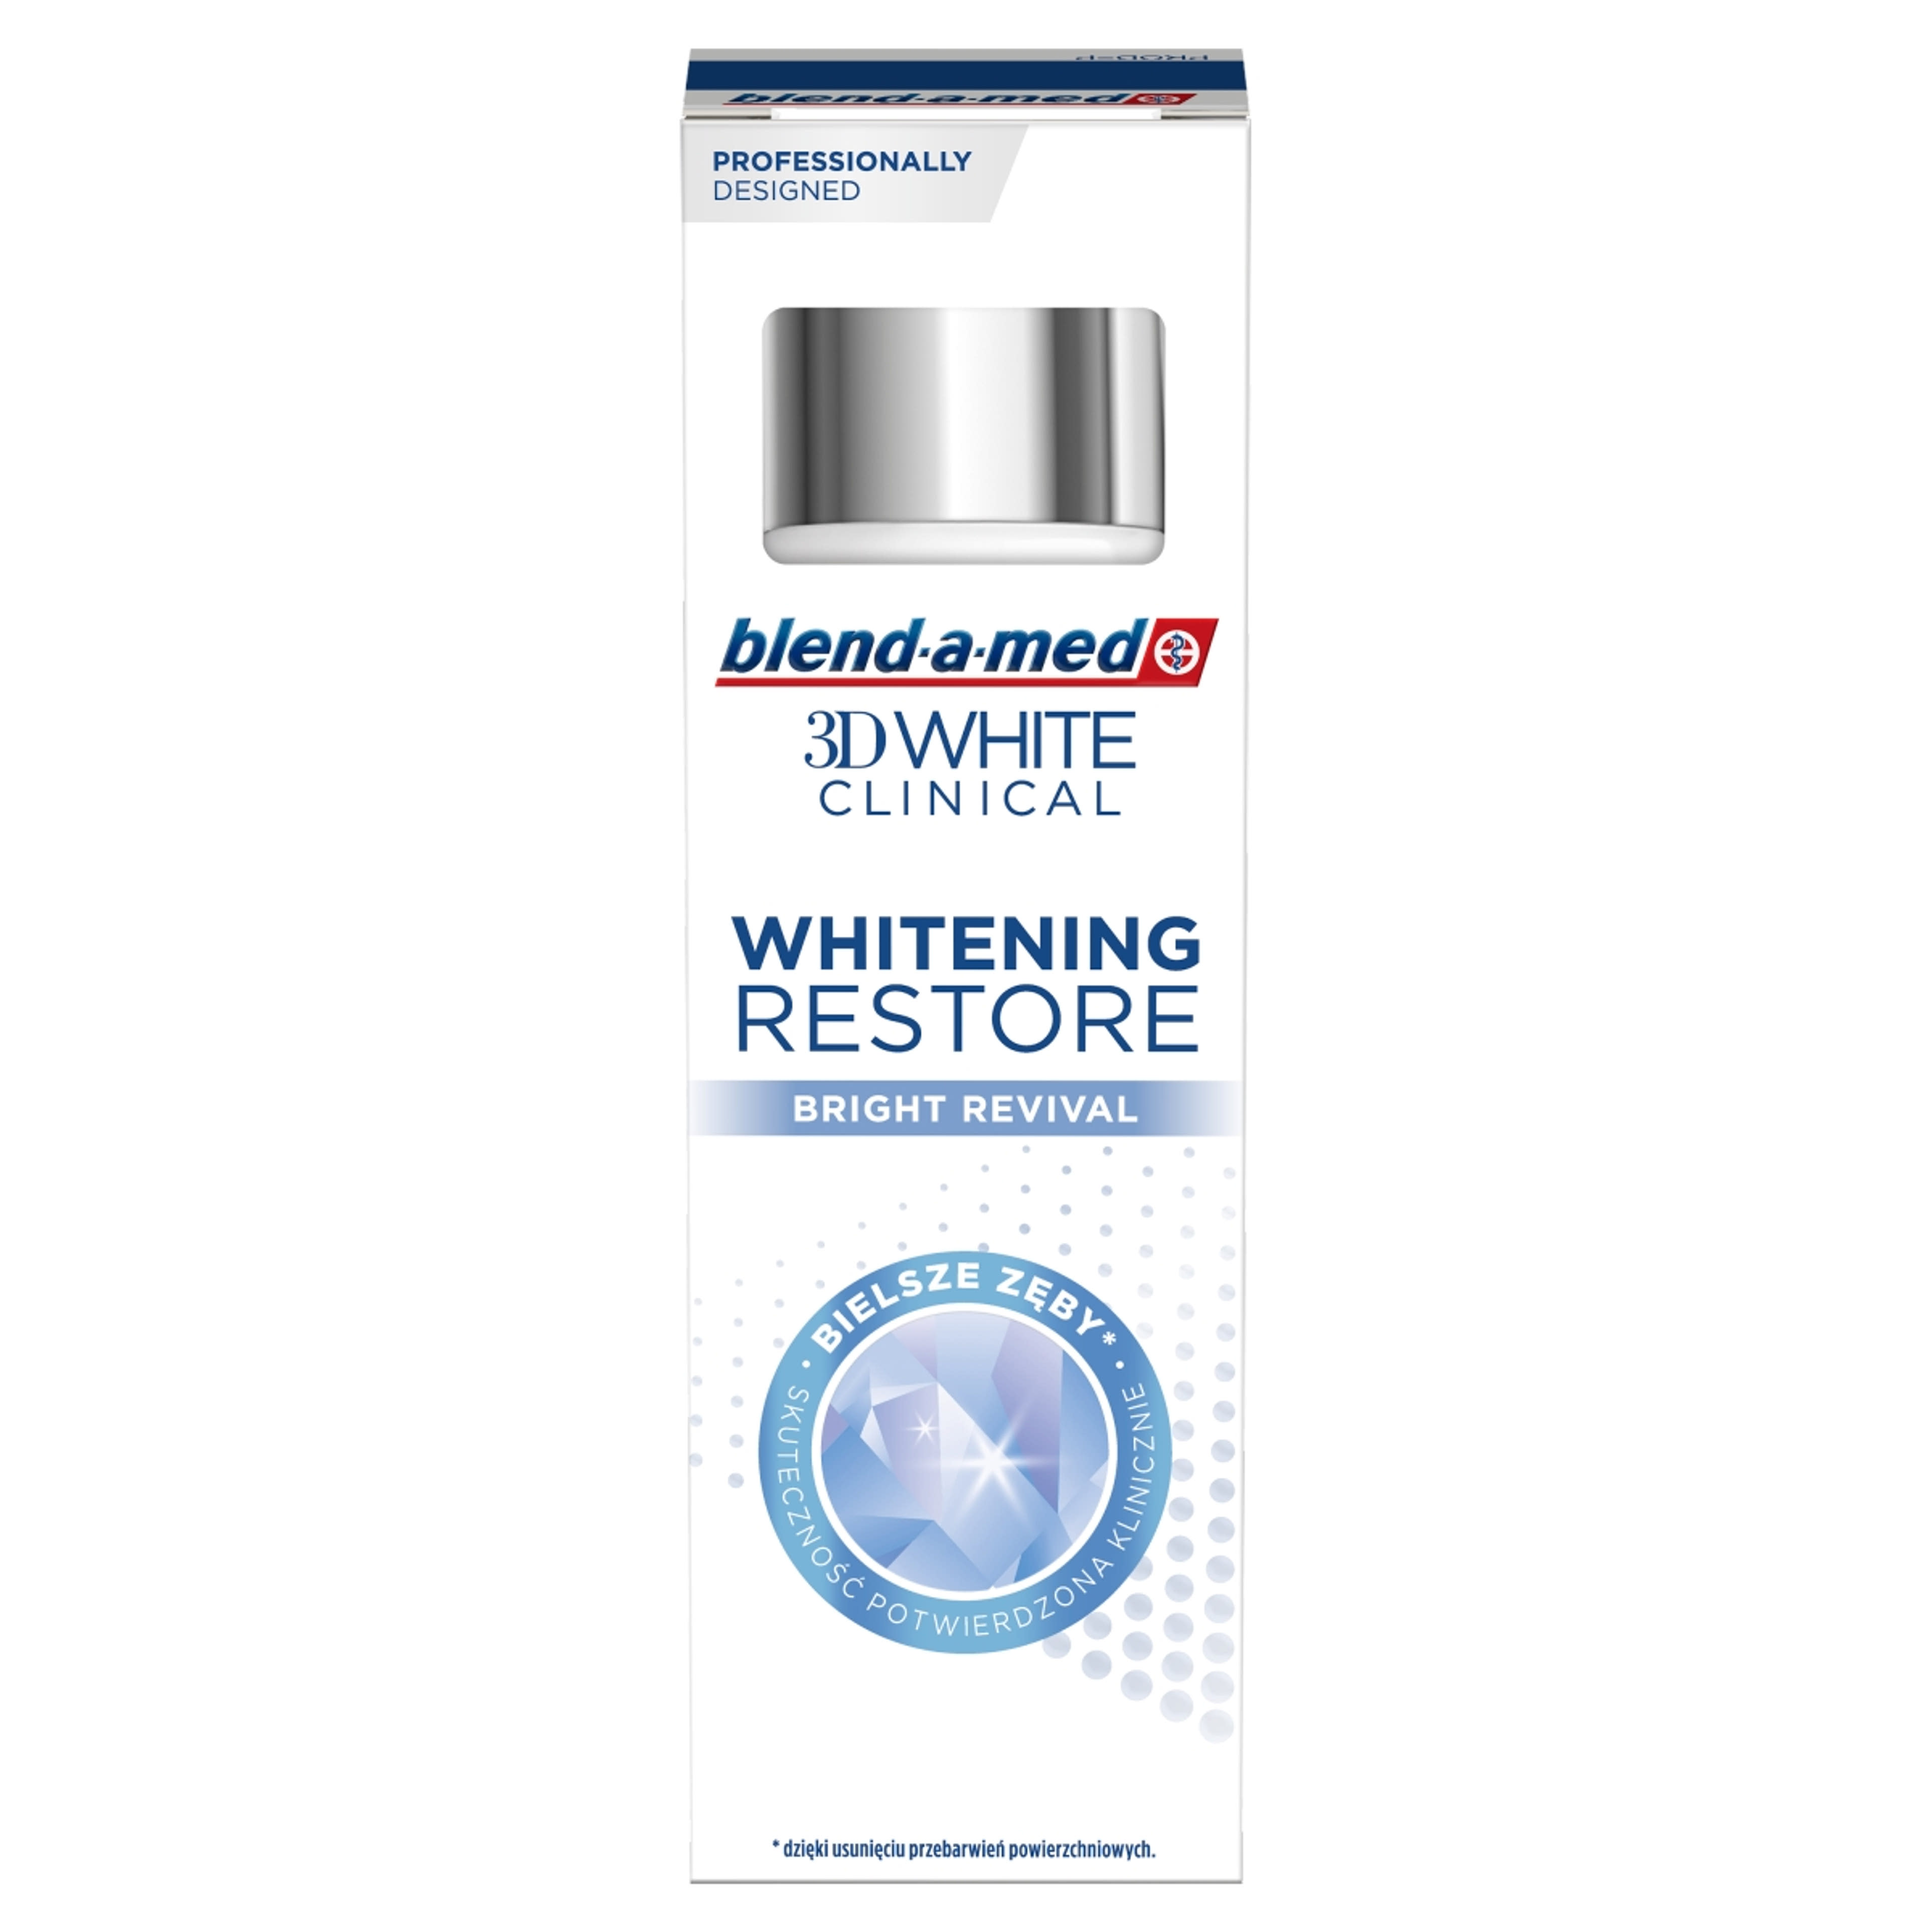 Blend-a-med 3D White Clinical Bright Revival fogkrém - 75 ml-3